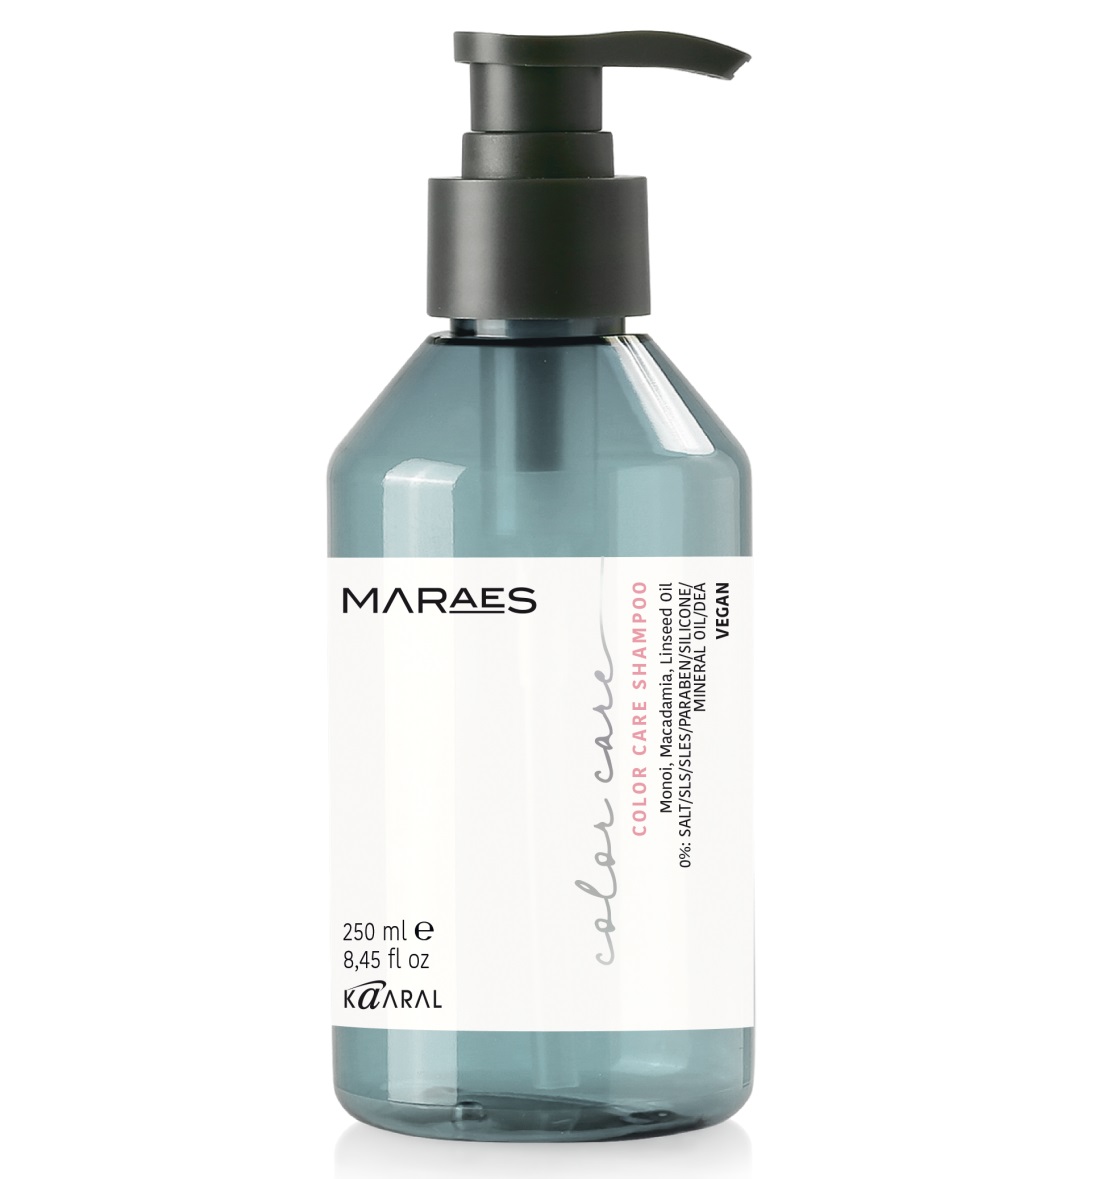 Kaaral Шампунь для окрашенных и химически обработанных волос Color Care Shampoo, 250 мл (Kaaral, Maraes)